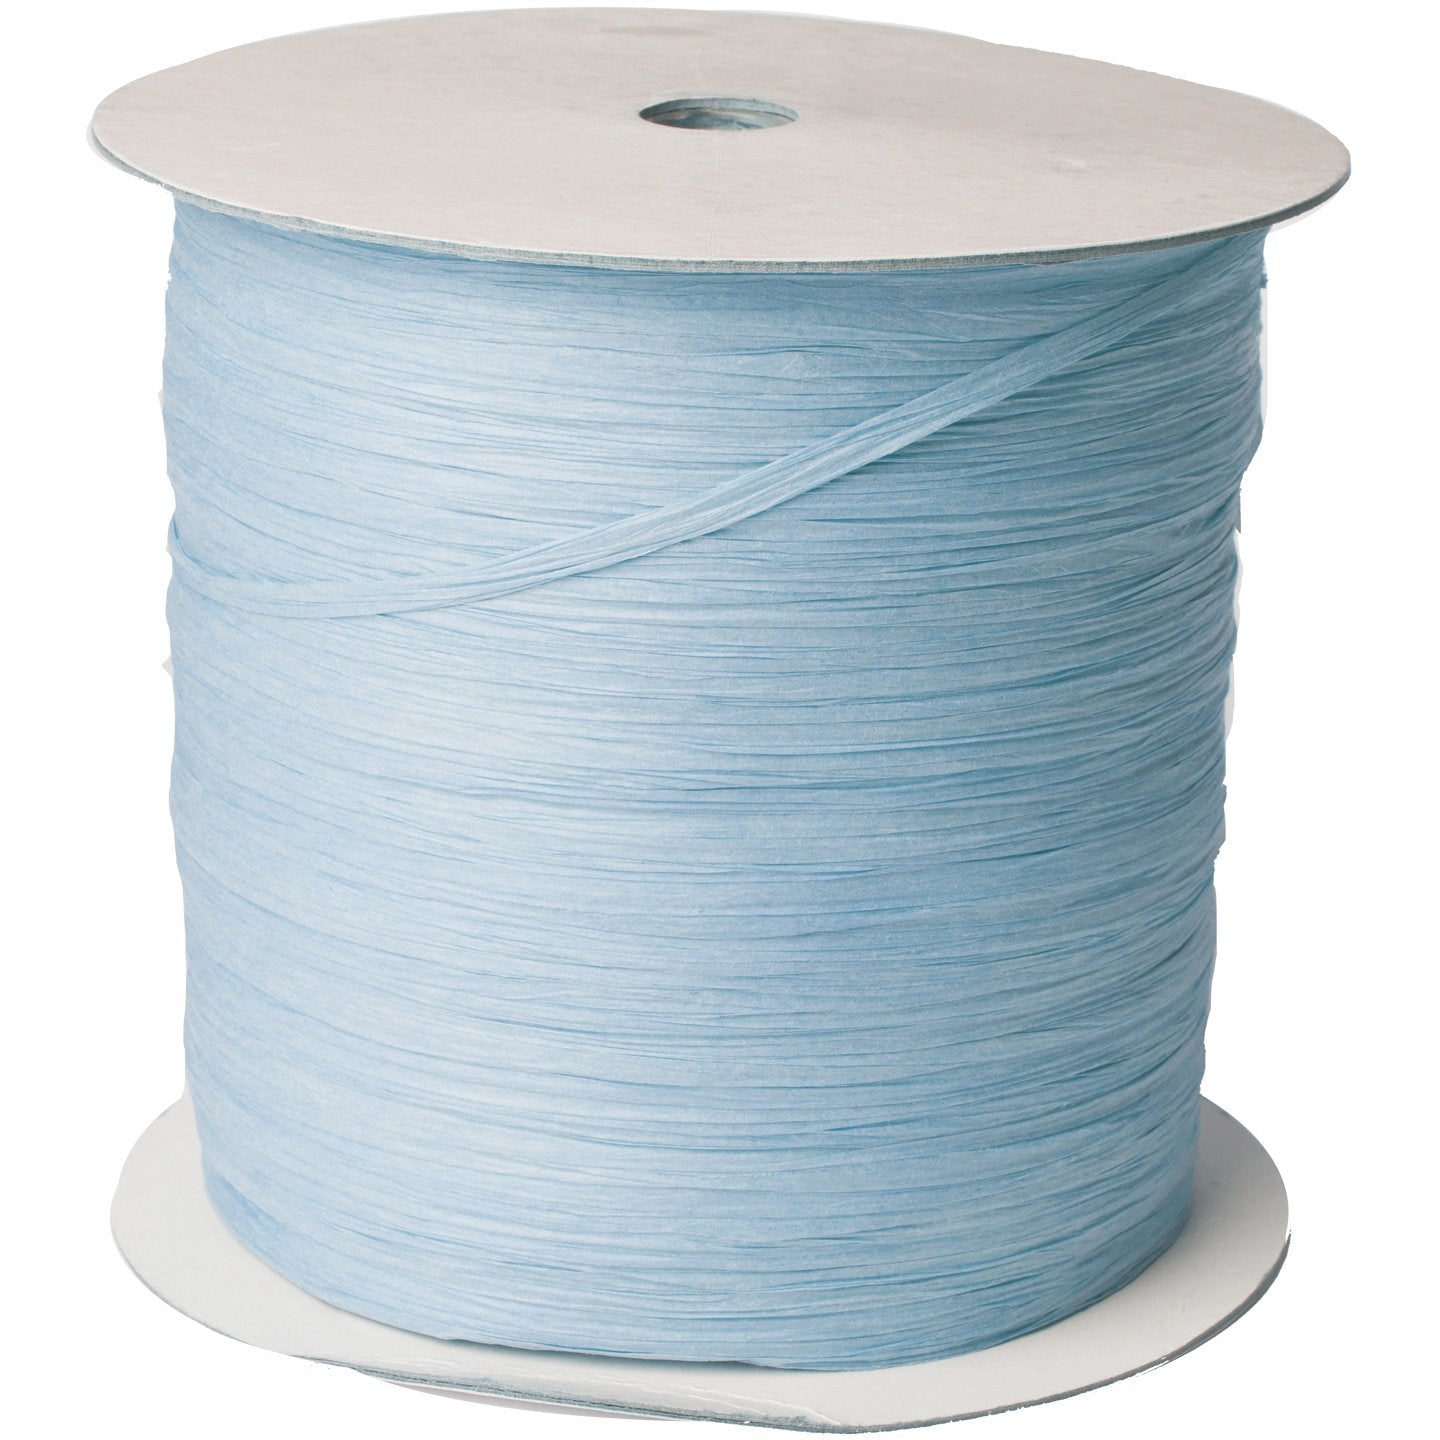 Jillson & Roberts Paper Raffia Ribbon, 1/4" Wide x 1000 Yards, Pastel Blue